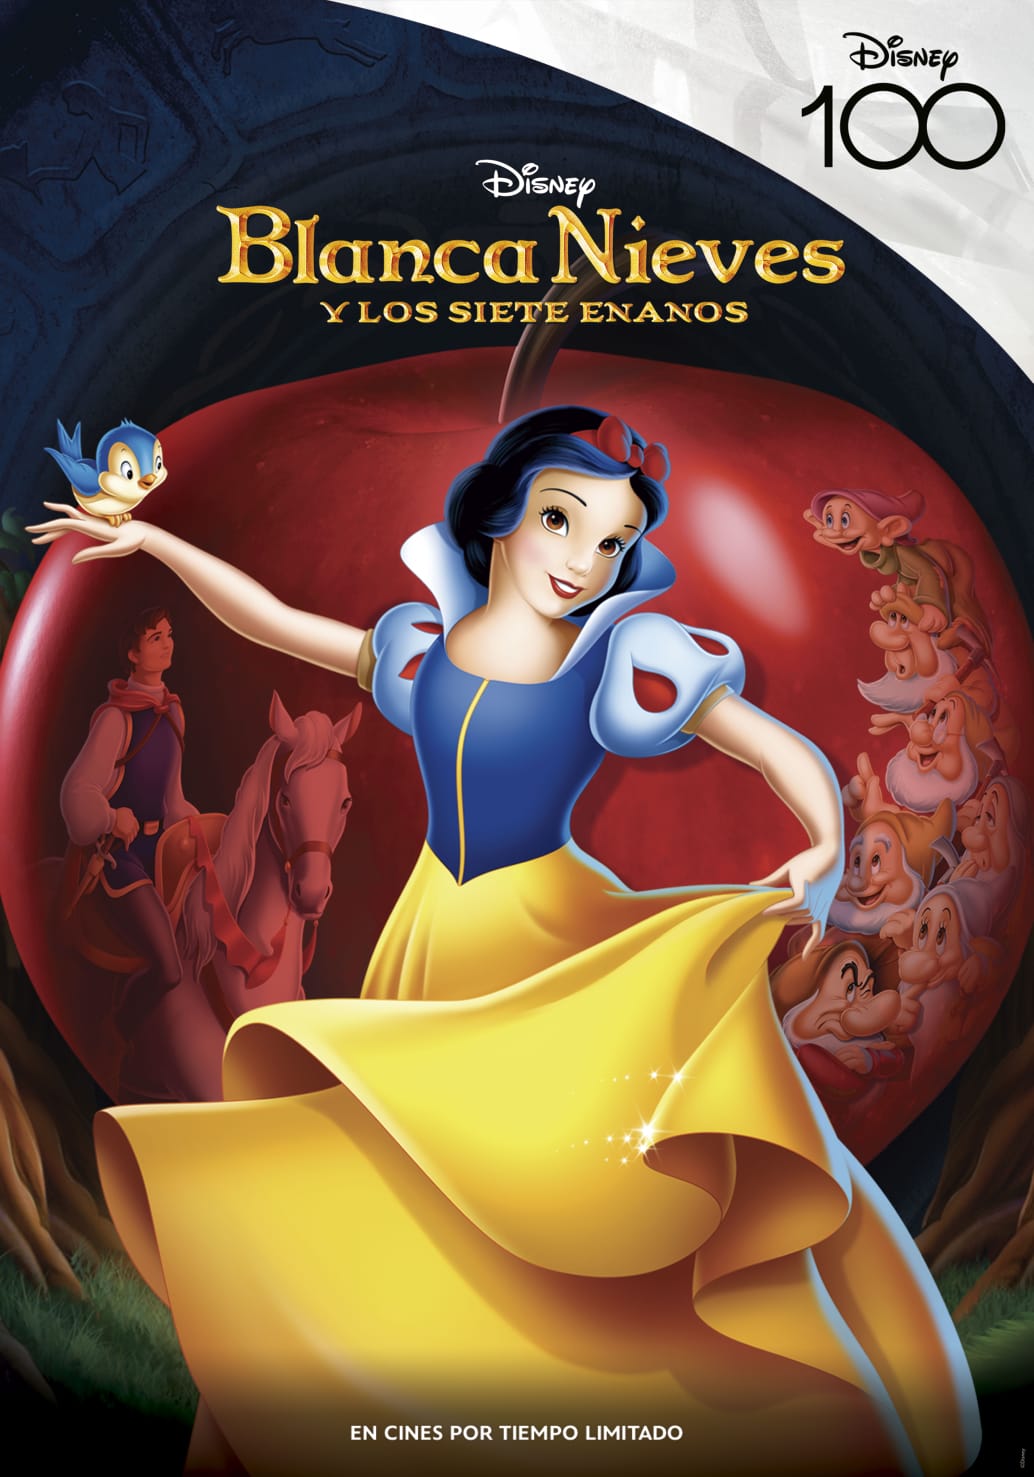 Los clásicos animados de Disney regresan a cines para celebrar su 100° Aniversario 2